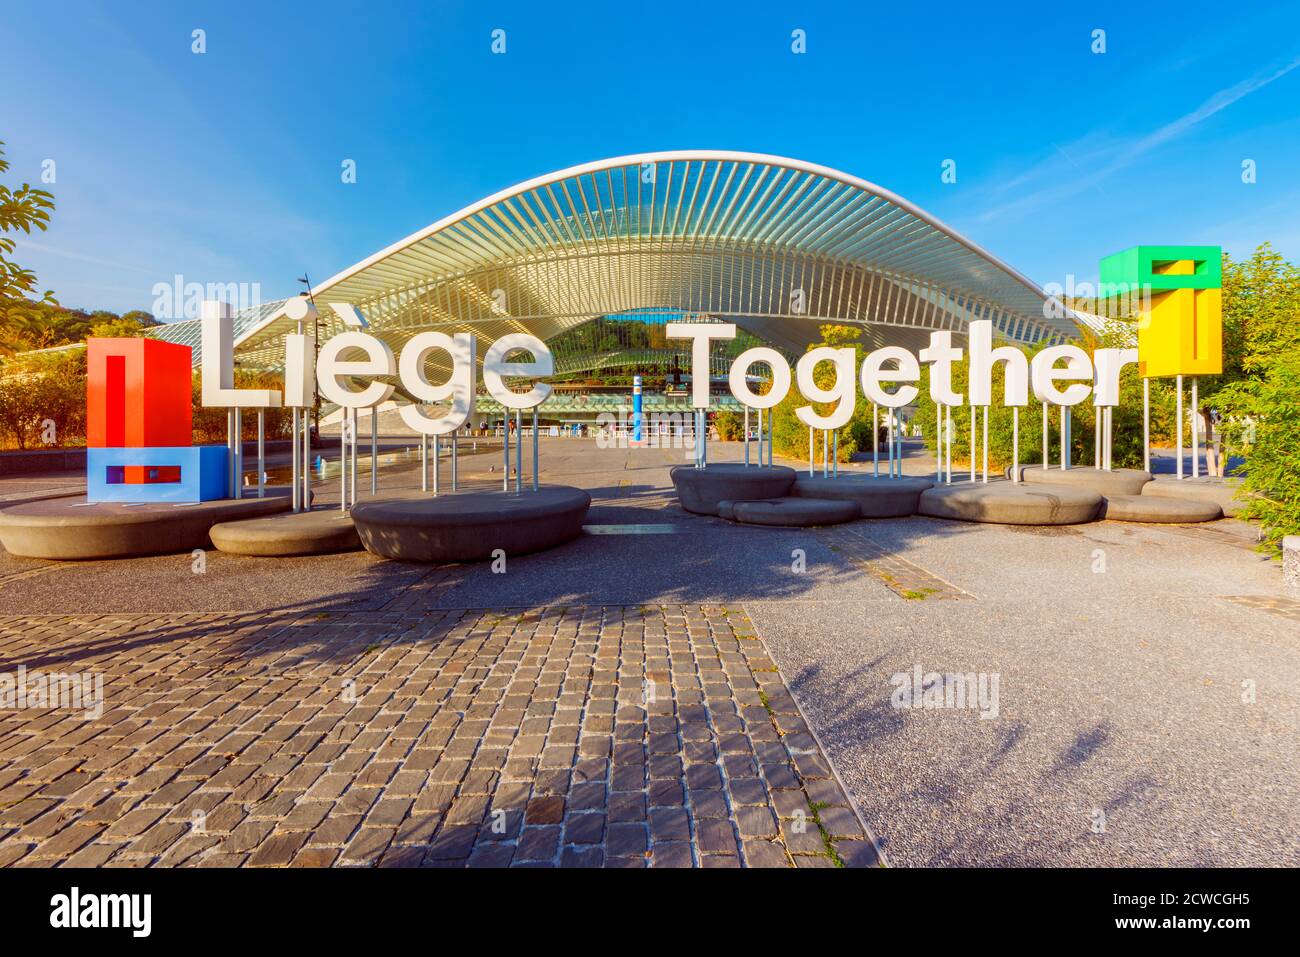 Liegi insieme lettere di fronte alla stazione ferroviaria di Liegi-Guillemins. Liegi Together è la tagline promozionale della città. Foto Stock